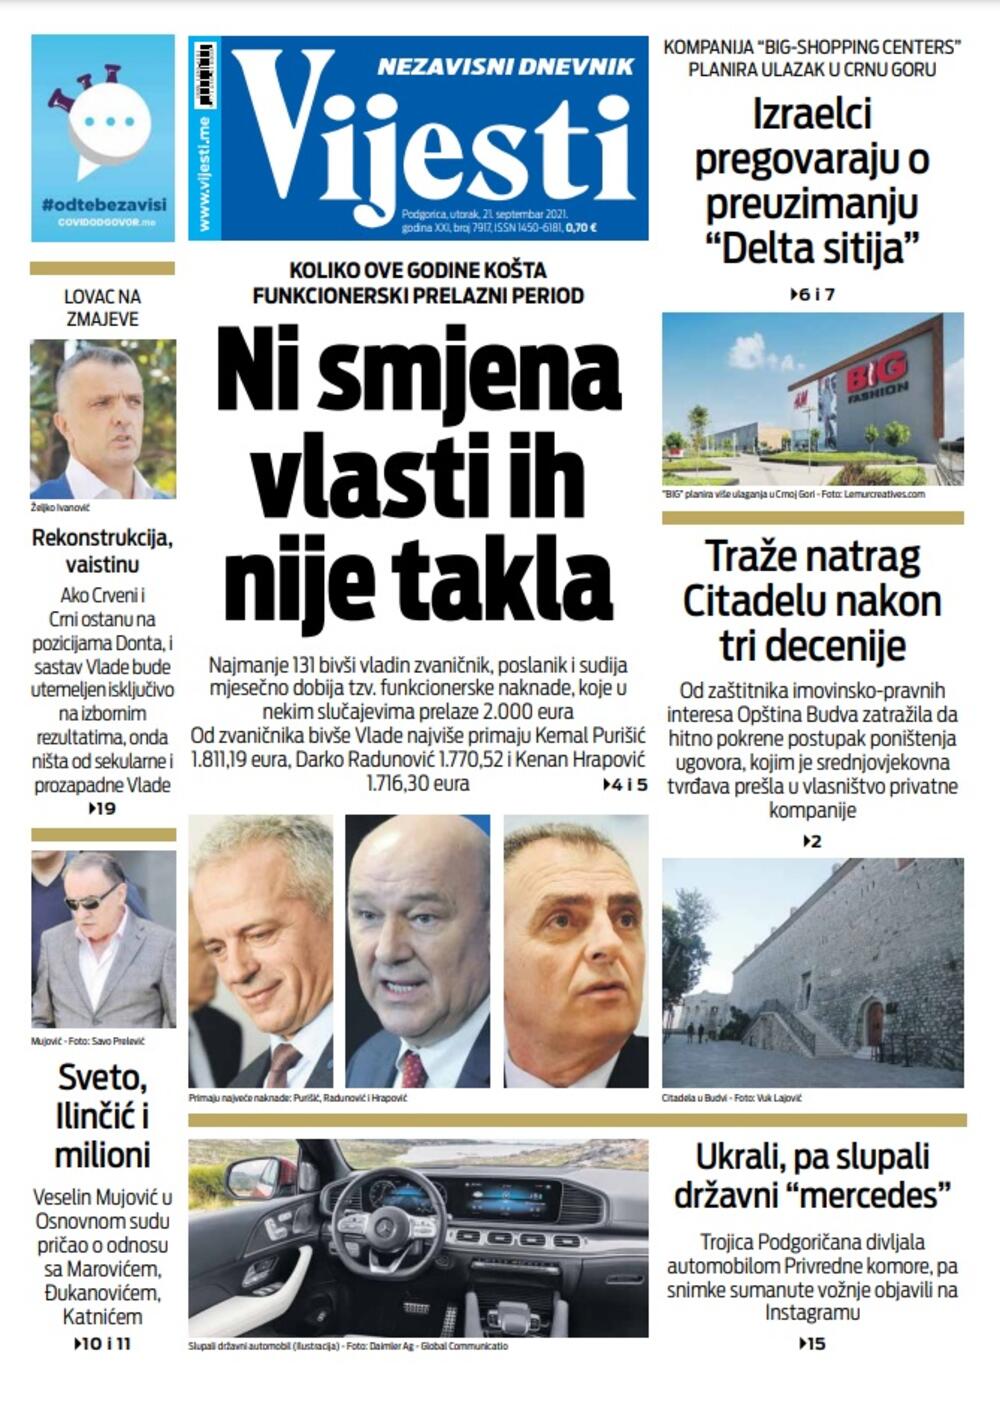 Naslovna strana "Vijesti" za 21. septembar 2021., Foto: Vijesti